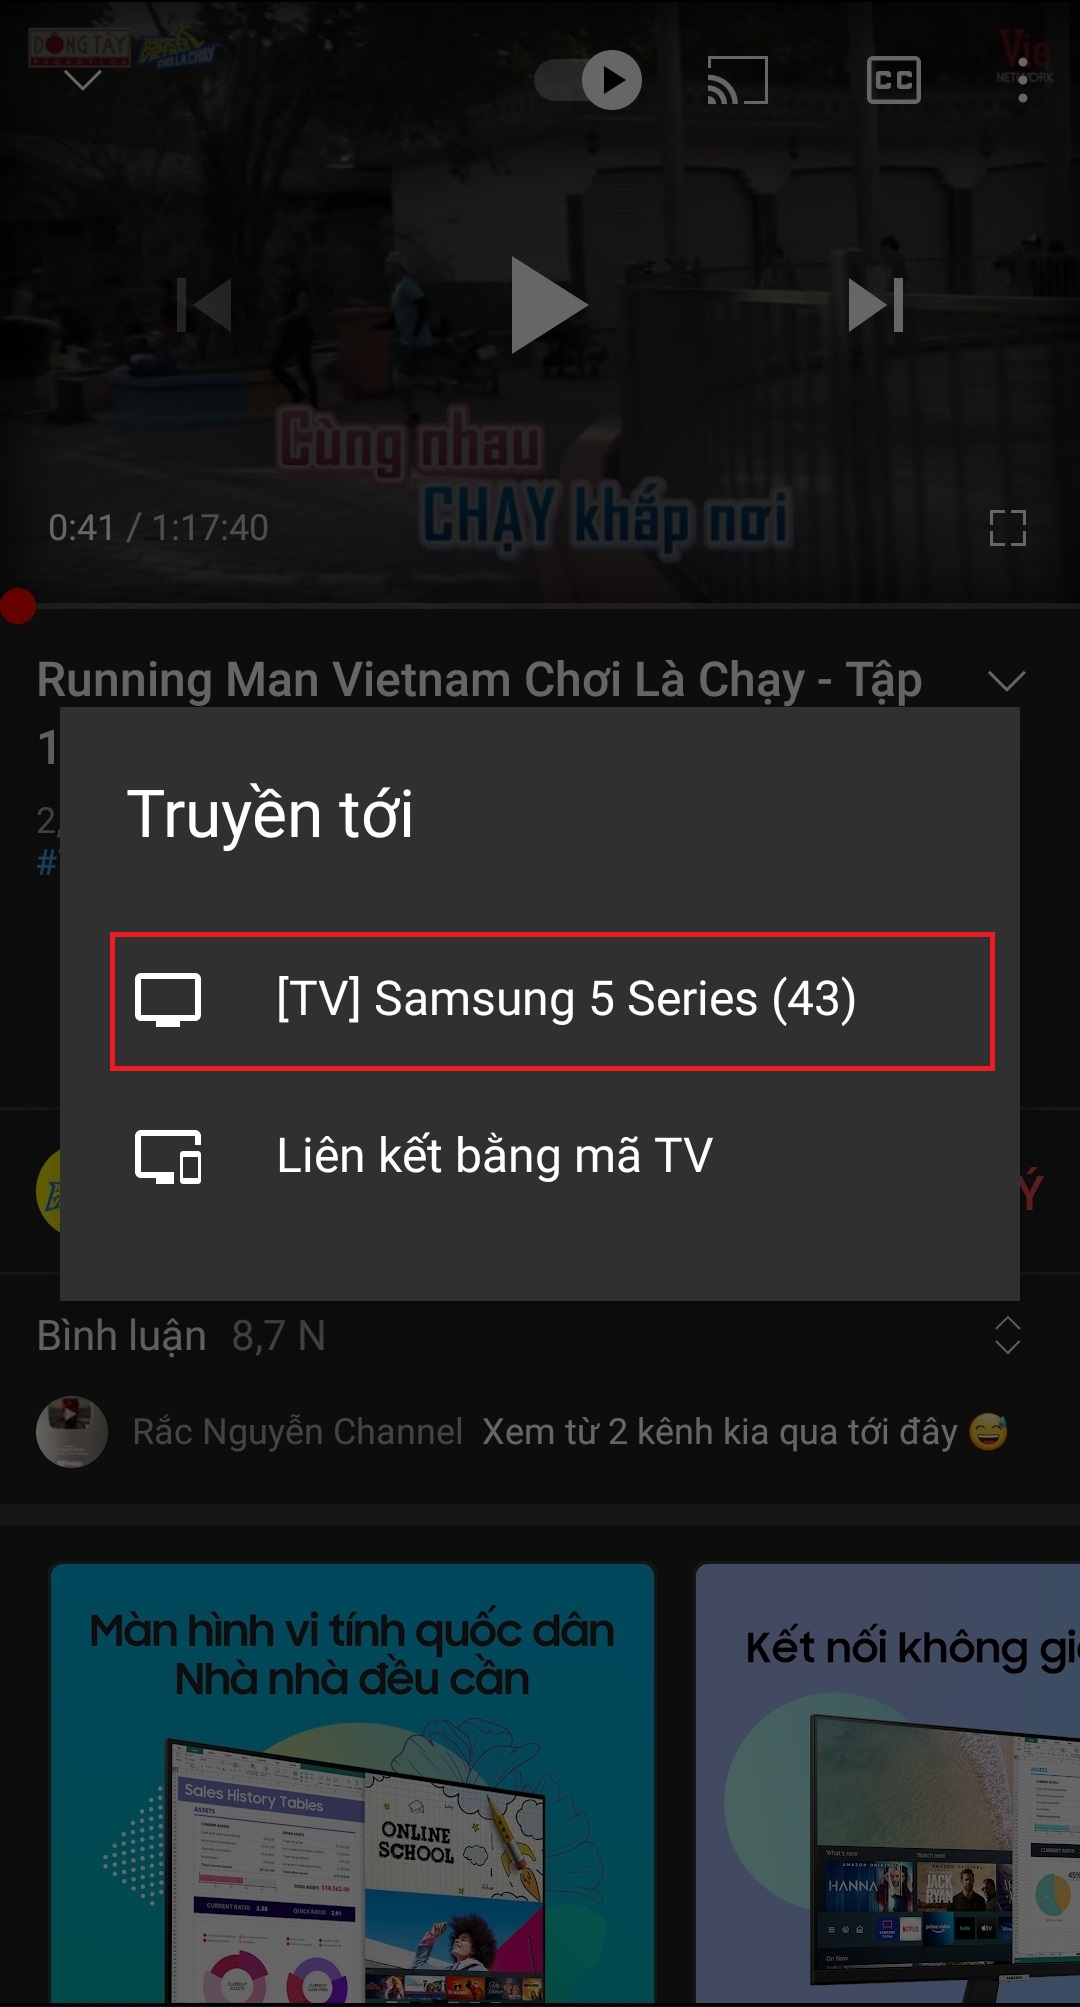 Trên màn hình điện thoại sẽ hiển thị các phương thức kết nối với tivi nhà bạn như: Tên tivi nhà bạn.